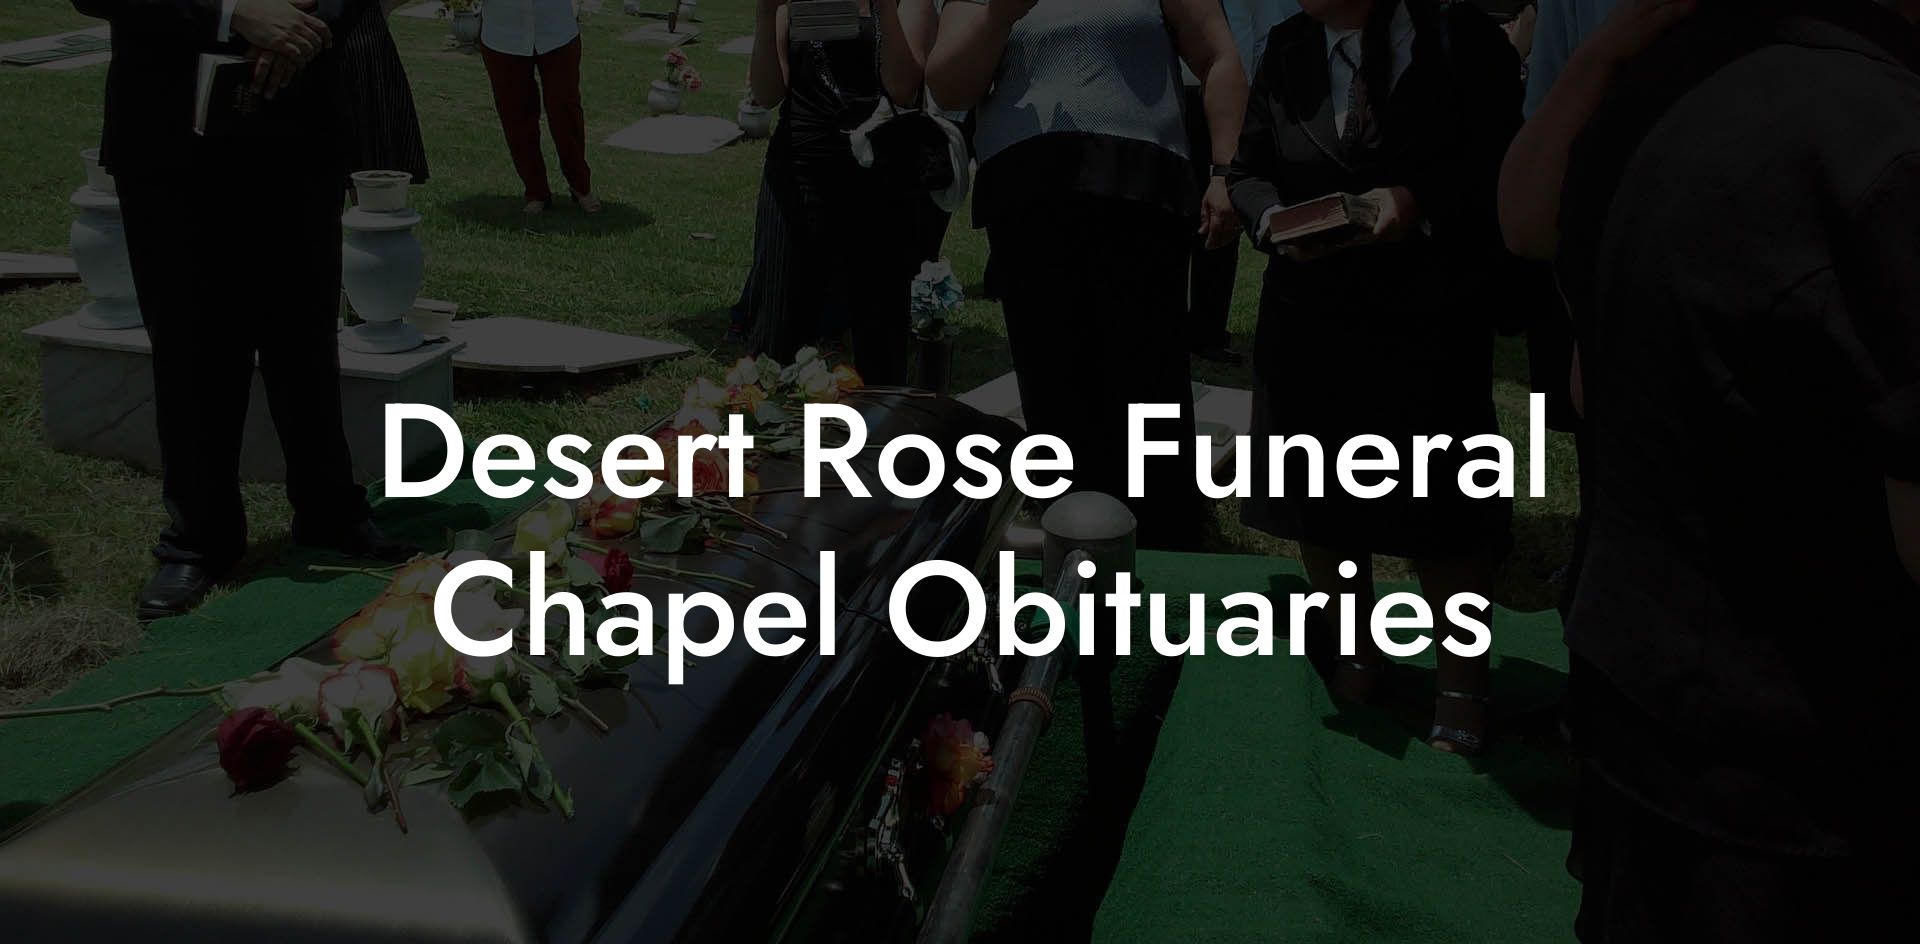 Desert Rose Funeral Chapel Obituaries